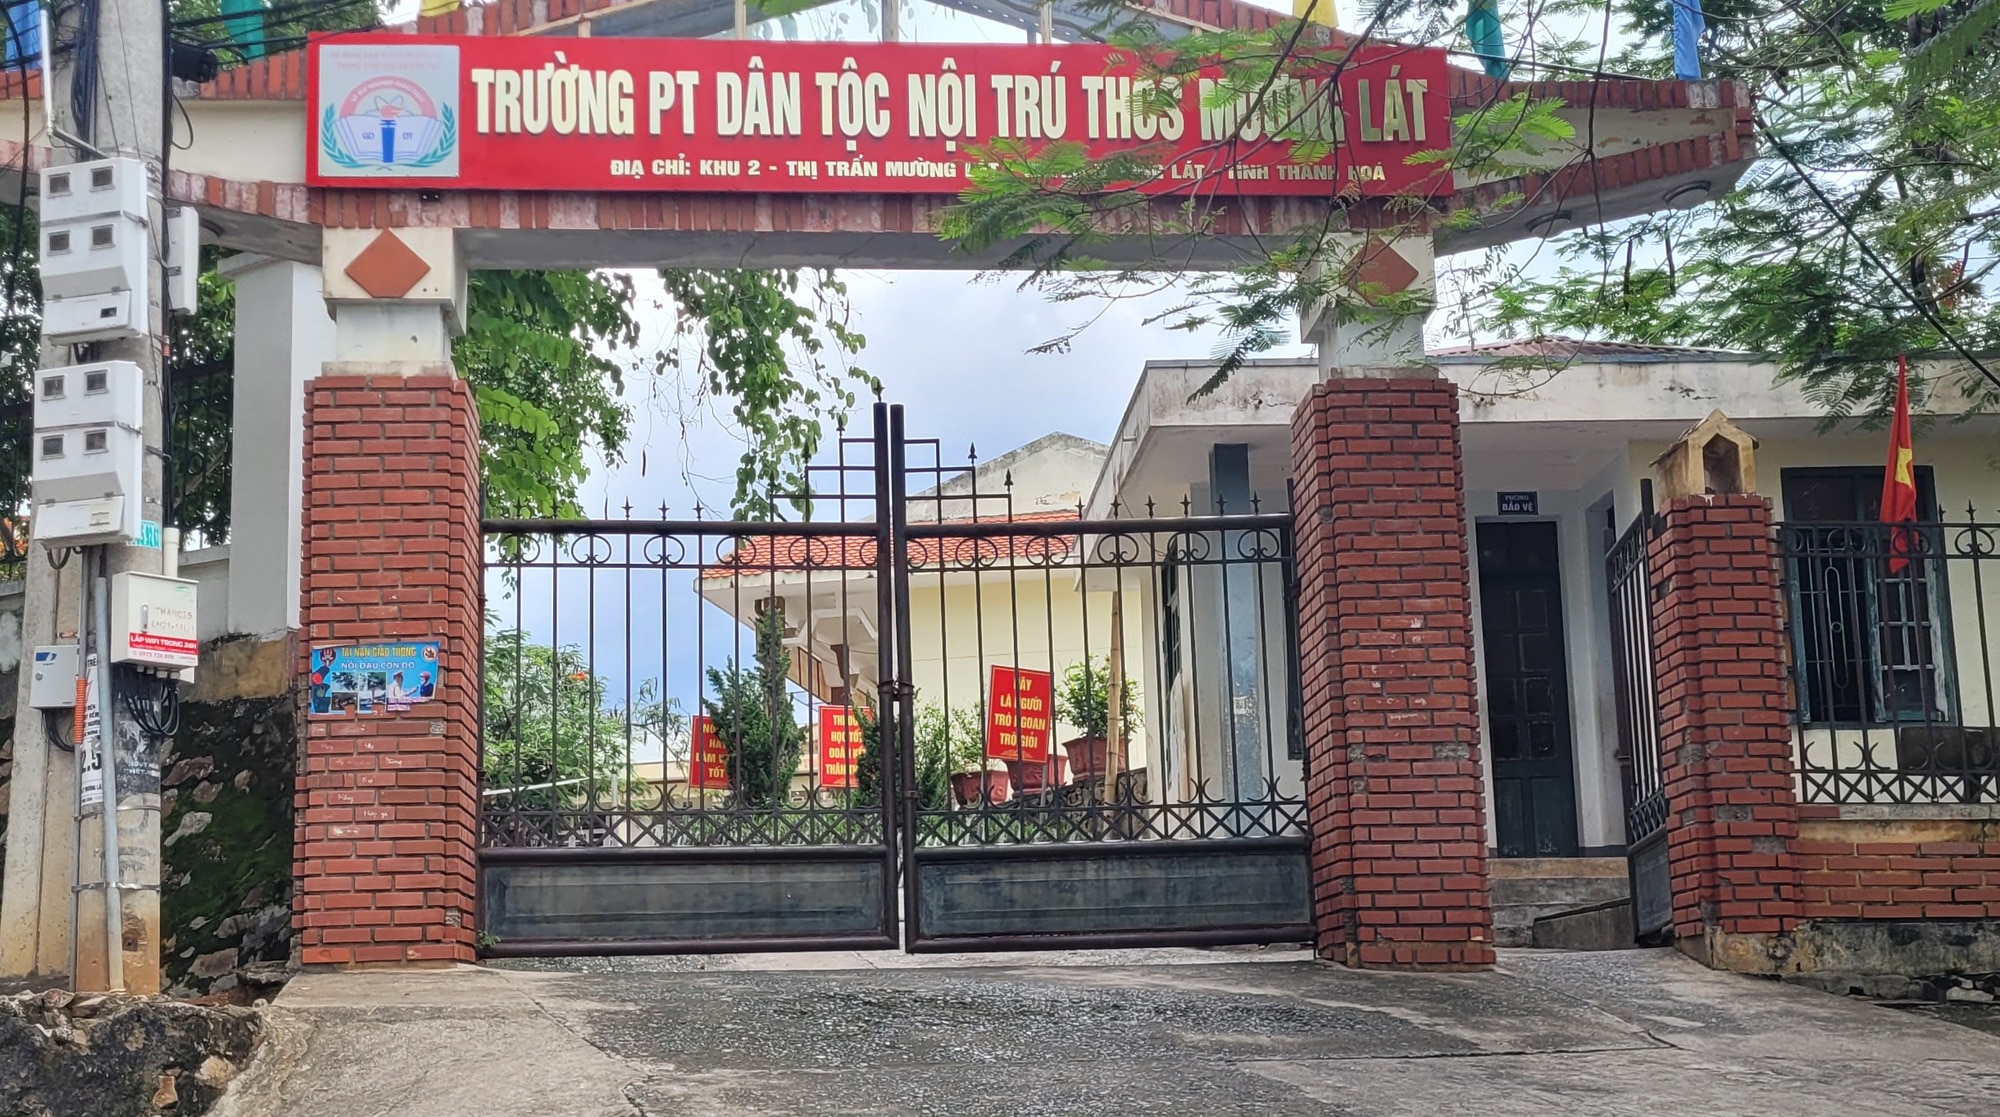 Trường phổ thông Dân tộc nội trú THCS Mường Lát, huyện Mường Lát - nơi xảy ra vụ việc - Ảnh: HÀ ĐỒNG